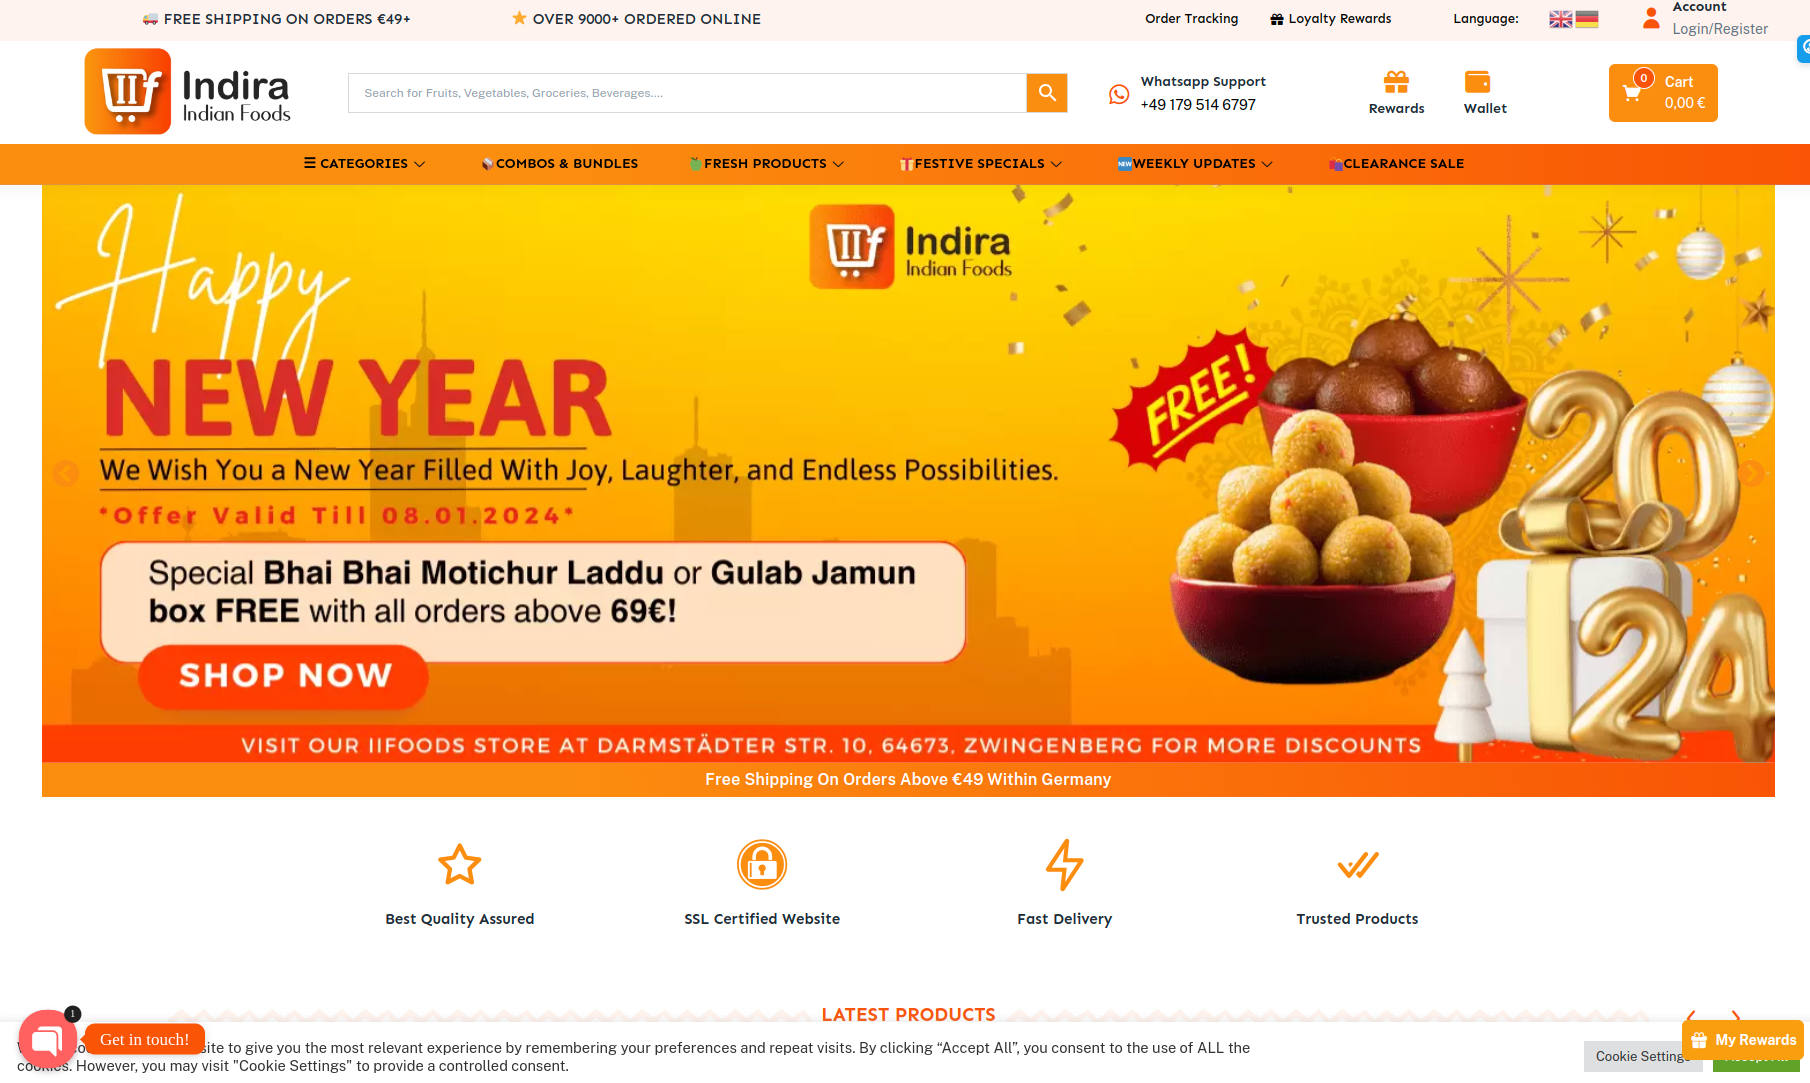 Indian groceries on iifoods (Home page of iifoods.de)